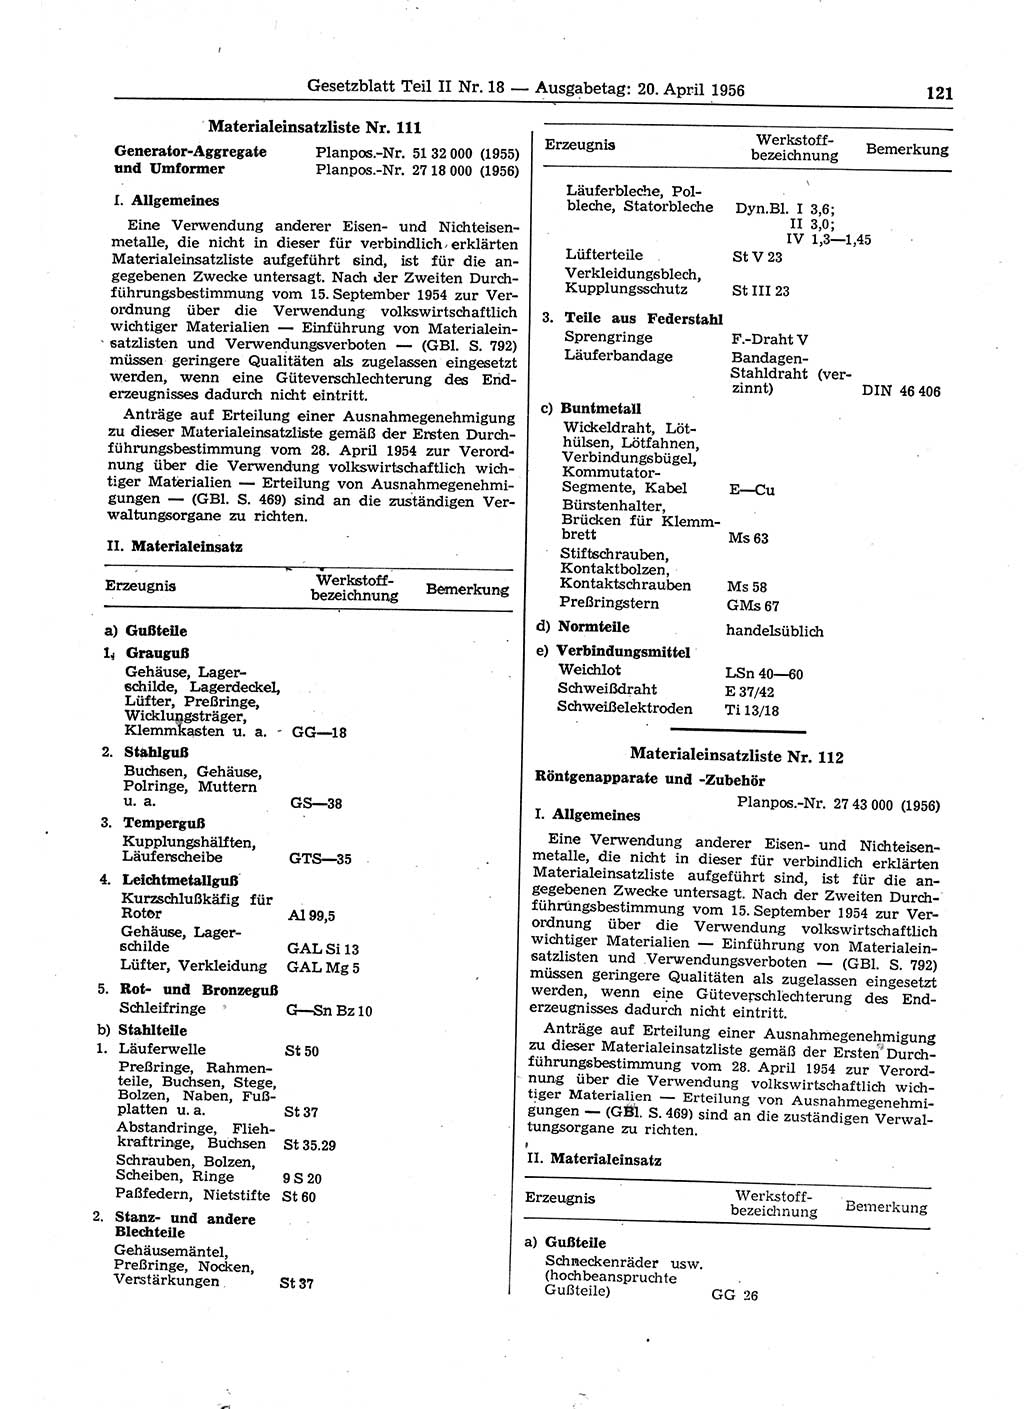 Gesetzblatt (GBl.) der Deutschen Demokratischen Republik (DDR) Teil ⅠⅠ 1956, Seite 121 (GBl. DDR ⅠⅠ 1956, S. 121)